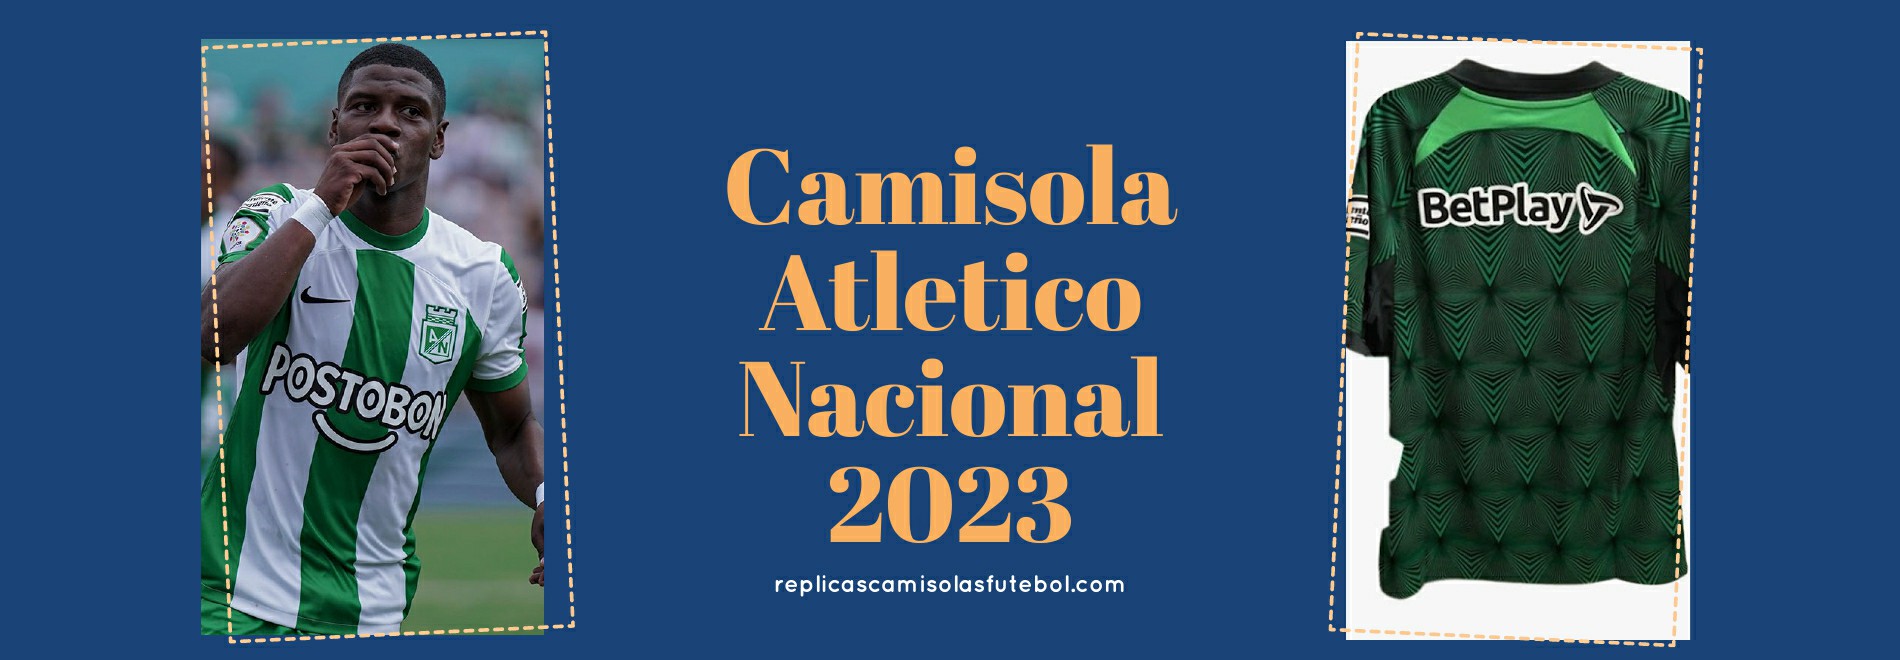 Camisola Atletico Nacional 2023-2024